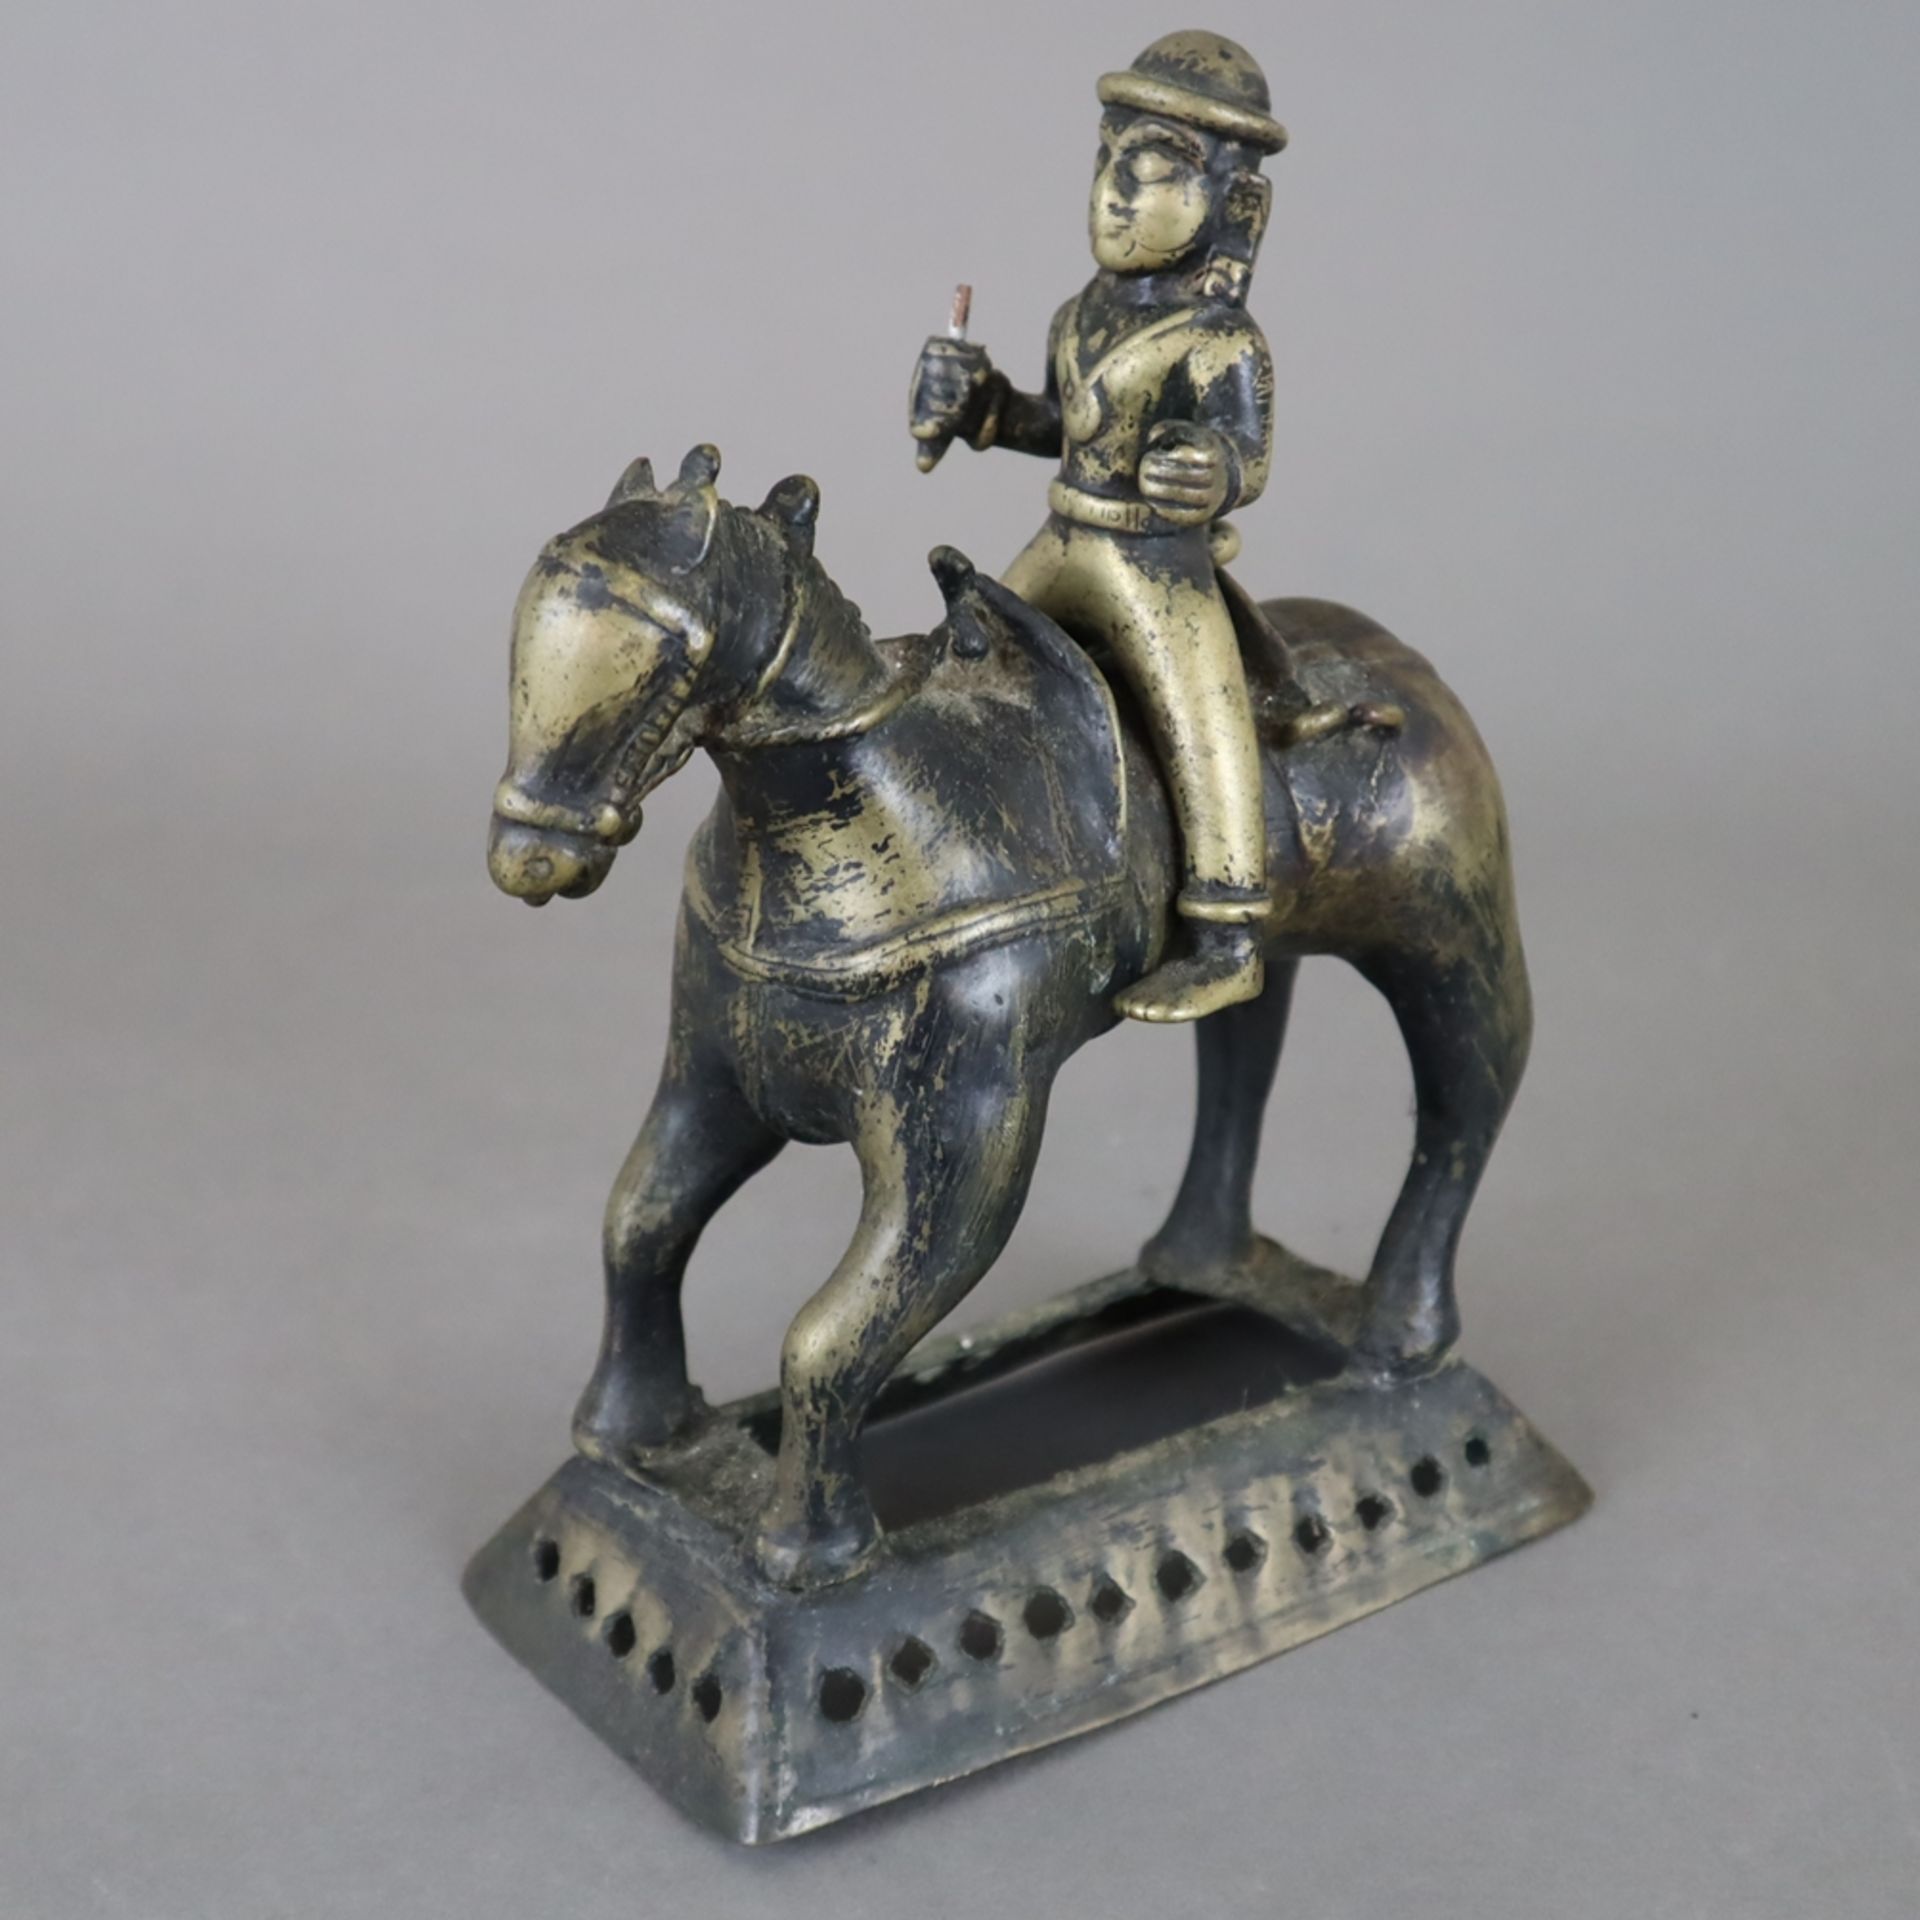 Reiter auf Pferd - Indien, gelbe Bronze, vermutlich die Gottheit Khandoba, die mit Shiva identisch